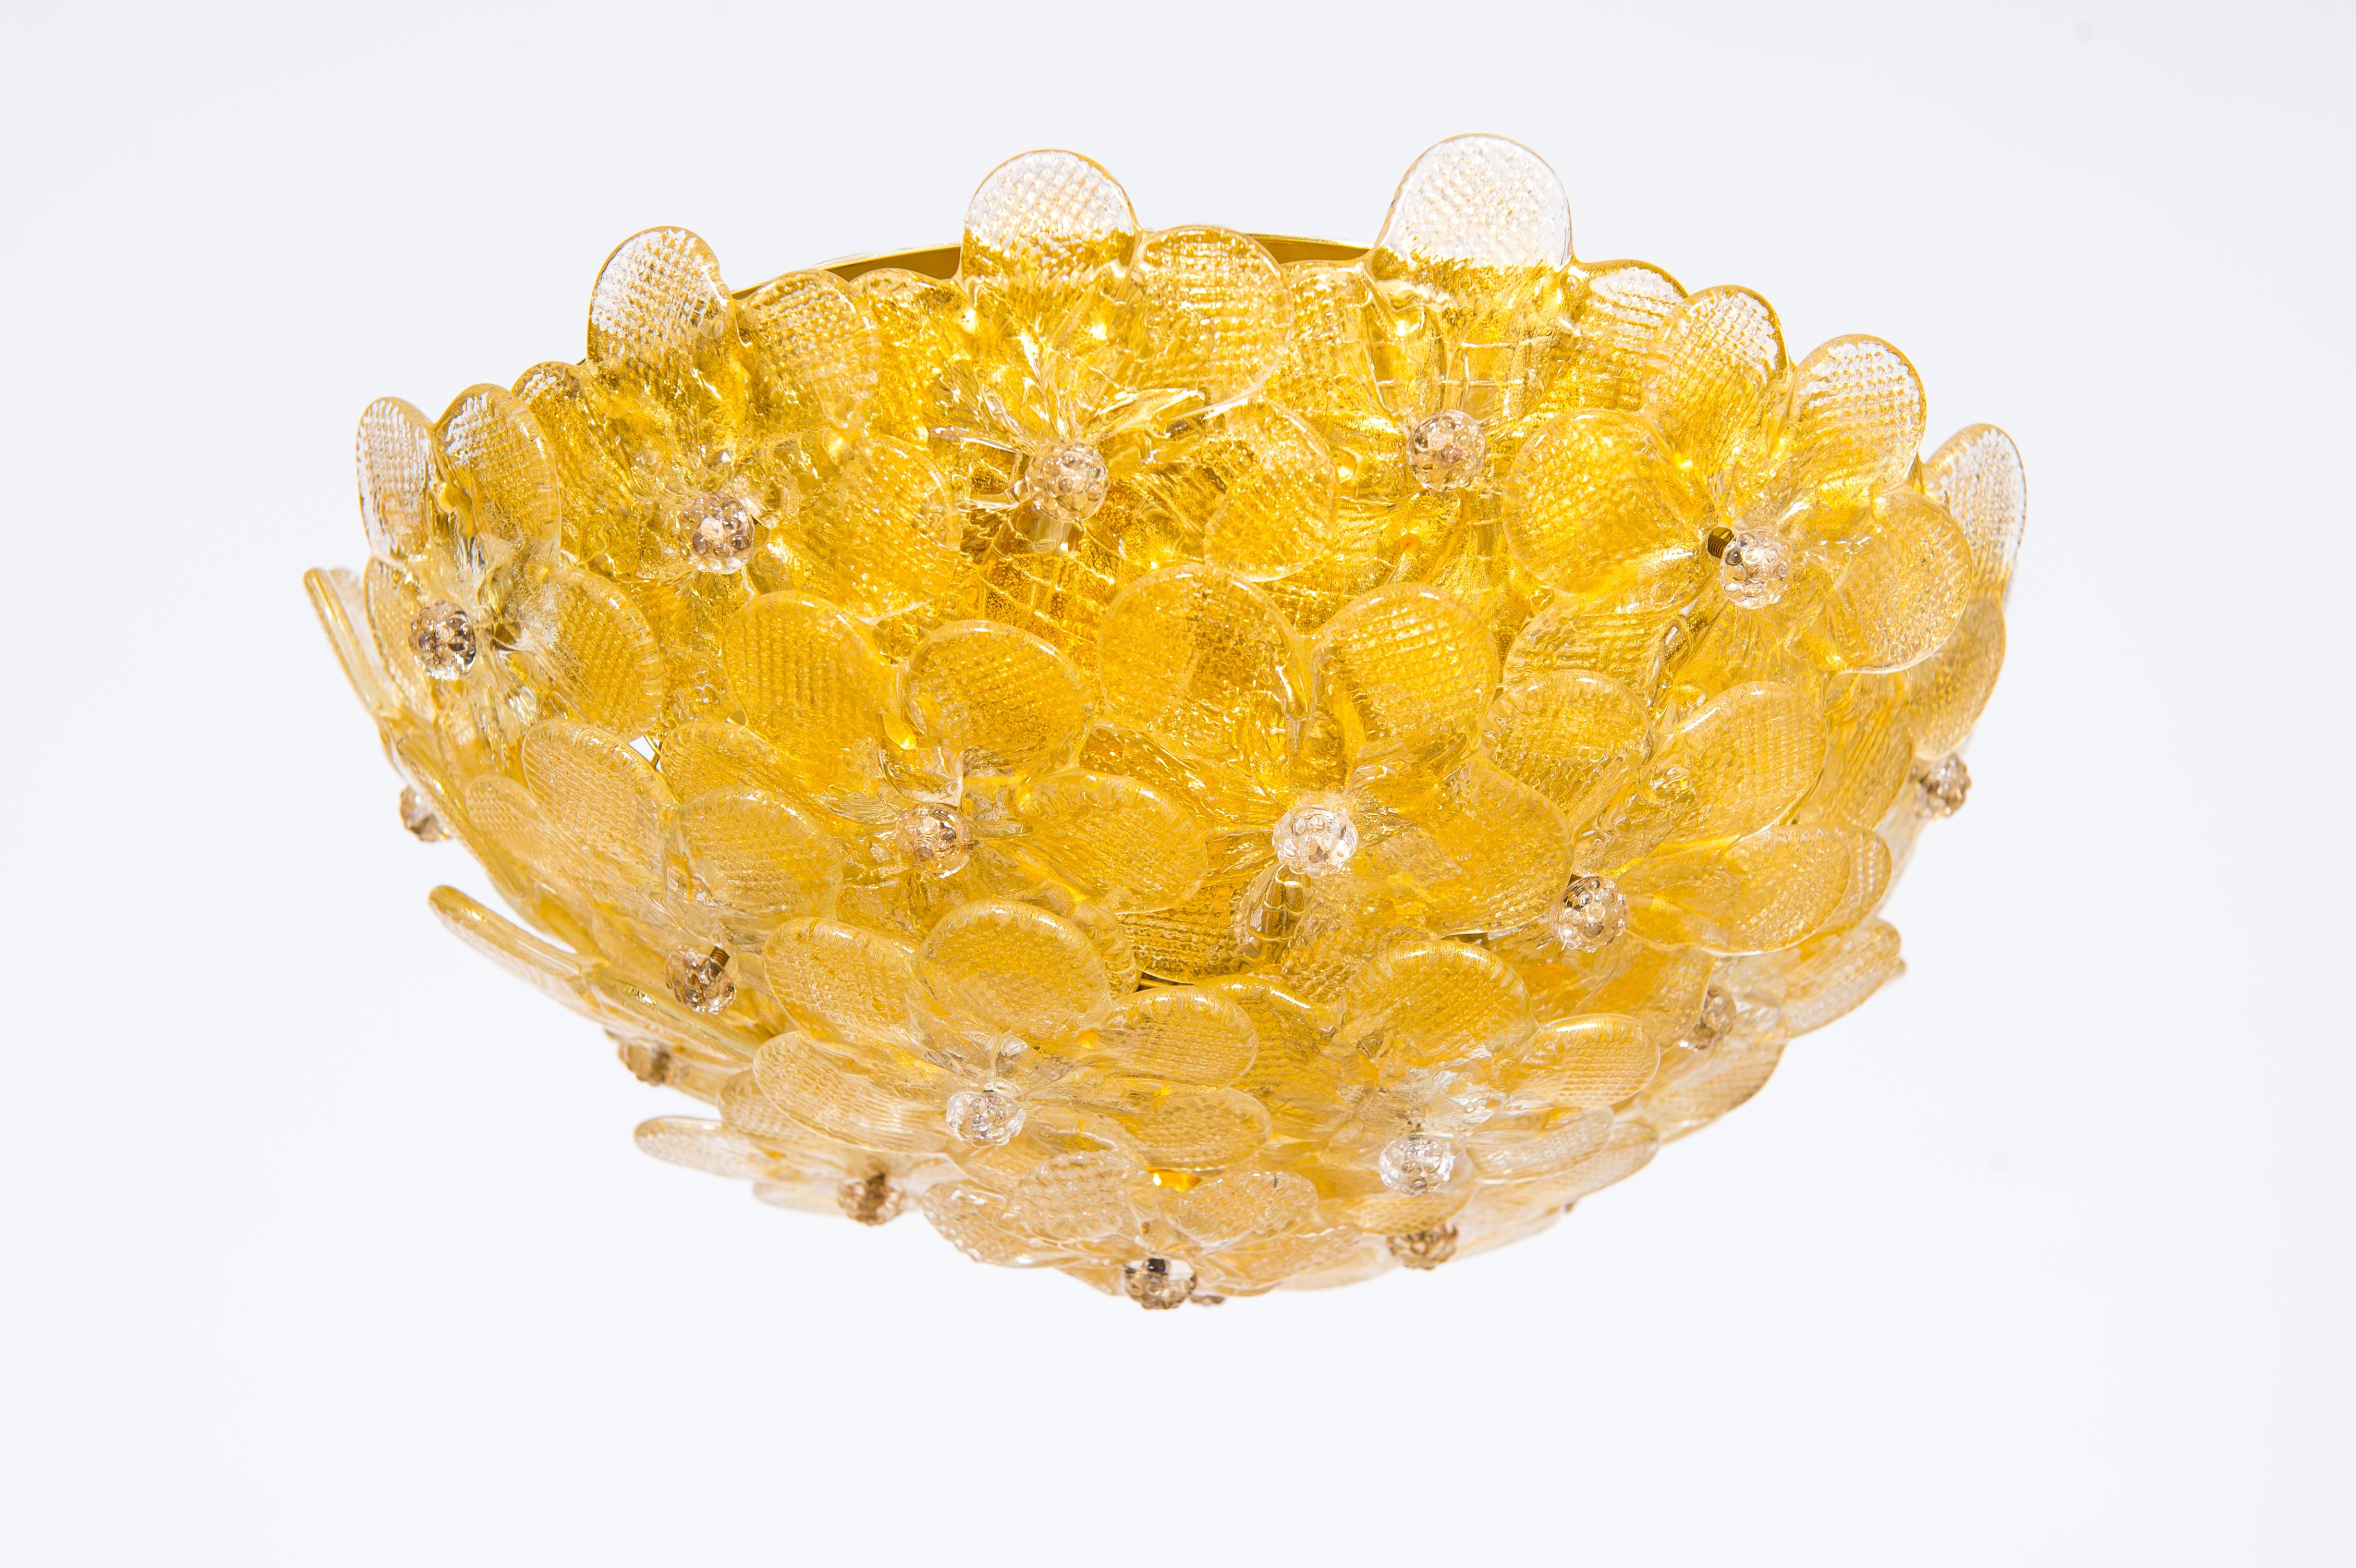 Plafonnier contemporain en verre vénitien Murano du 21e siècle avec finitions dorées.
Cette œuvre d'art étonnante se distingue par la qualité et la perfection de ses détails. Il est composé d'un ensemble de fleurs en verre qui entourent la monture